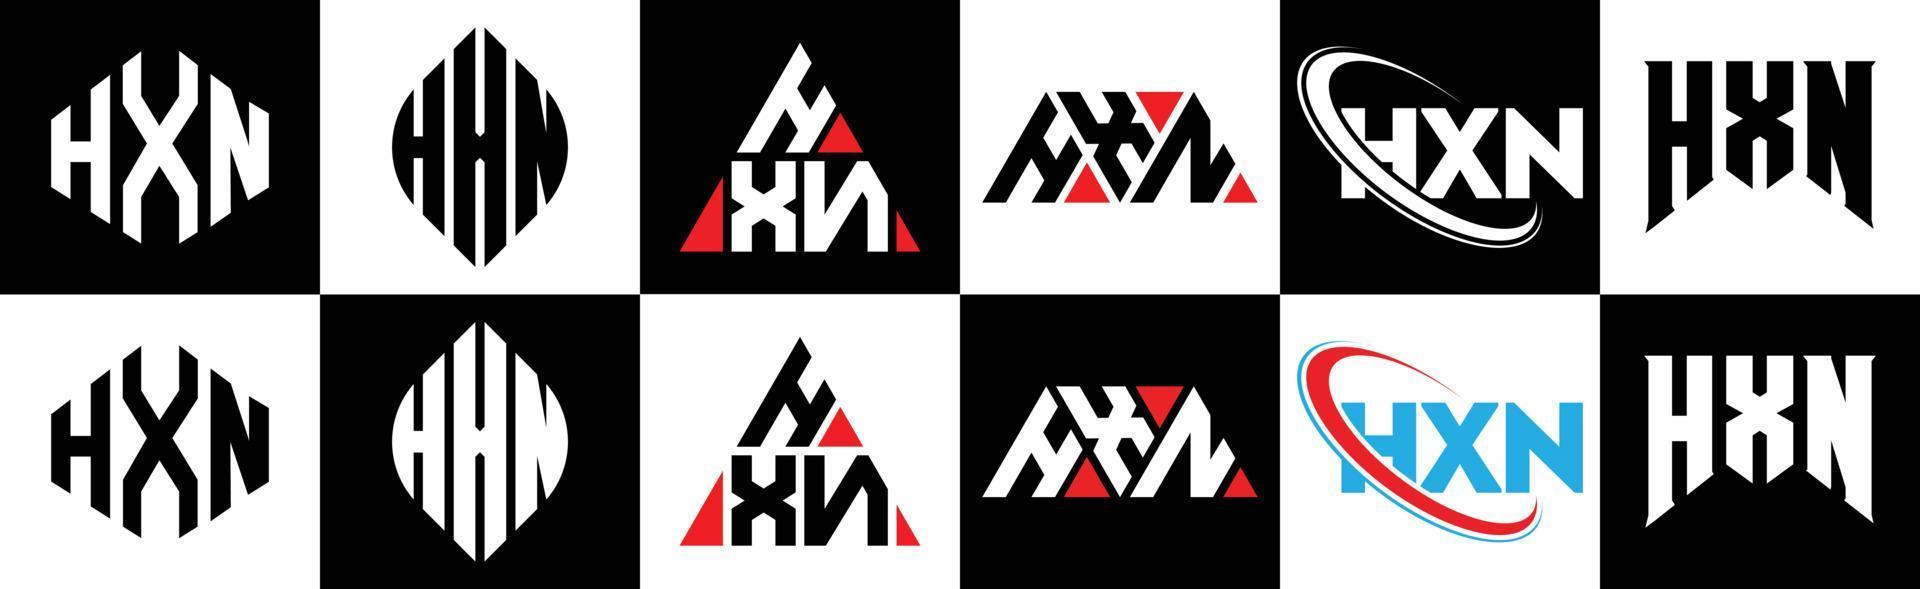 hxn-Buchstaben-Logo-Design in sechs Stilen. hxn Polygon, Kreis, Dreieck, Sechseck, flacher und einfacher Stil mit schwarz-weißem Buchstabenlogo in einer Zeichenfläche. hxn minimalistisches und klassisches Logo vektor